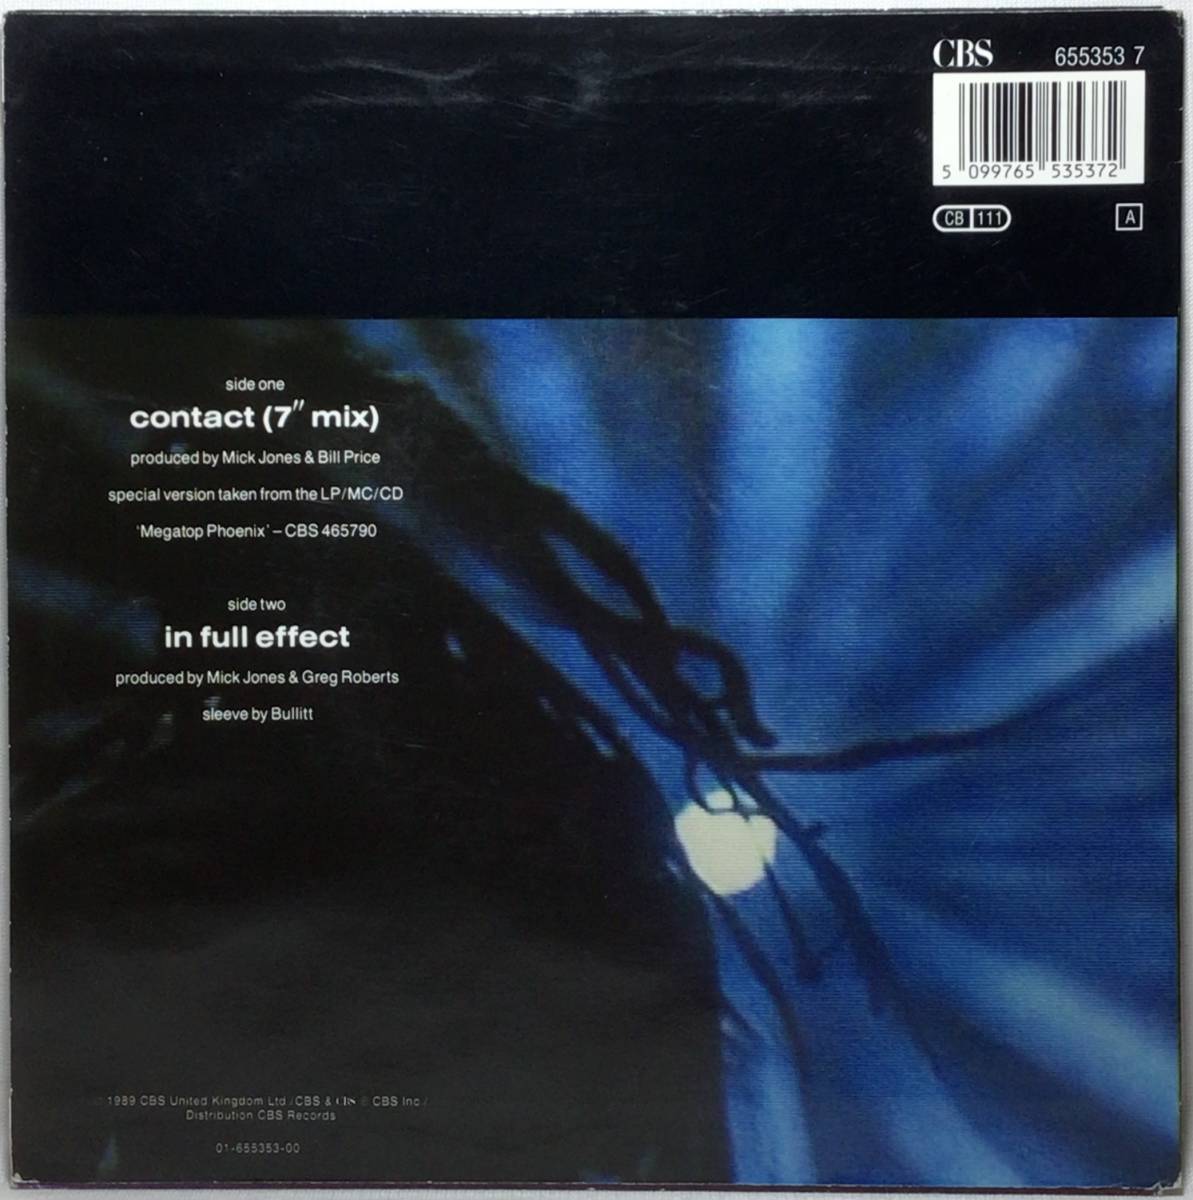 【蘭7】 BIG AUDIO DYNAMITE / CONTACT / IN FULL EFFECT / 1989 オランダ盤 7インチレコード EP 45 BAD THE CLASH MICK JONES 試聴済_画像2